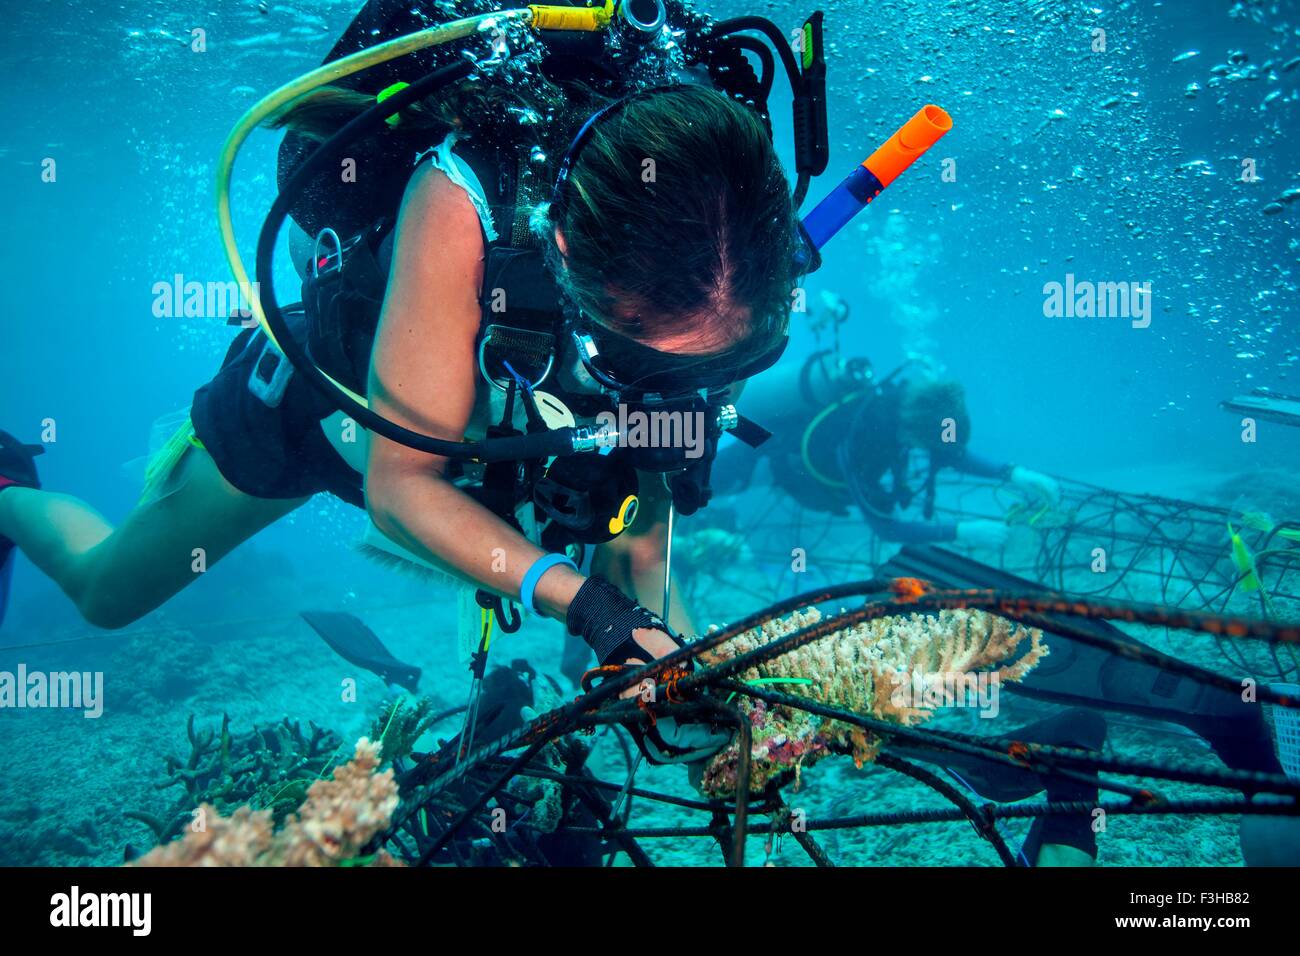 Sous-vue de la fixation d'un plongeur, seacrete (acier artificiel reef avec courant électrique), Naples, Italy Banque D'Images